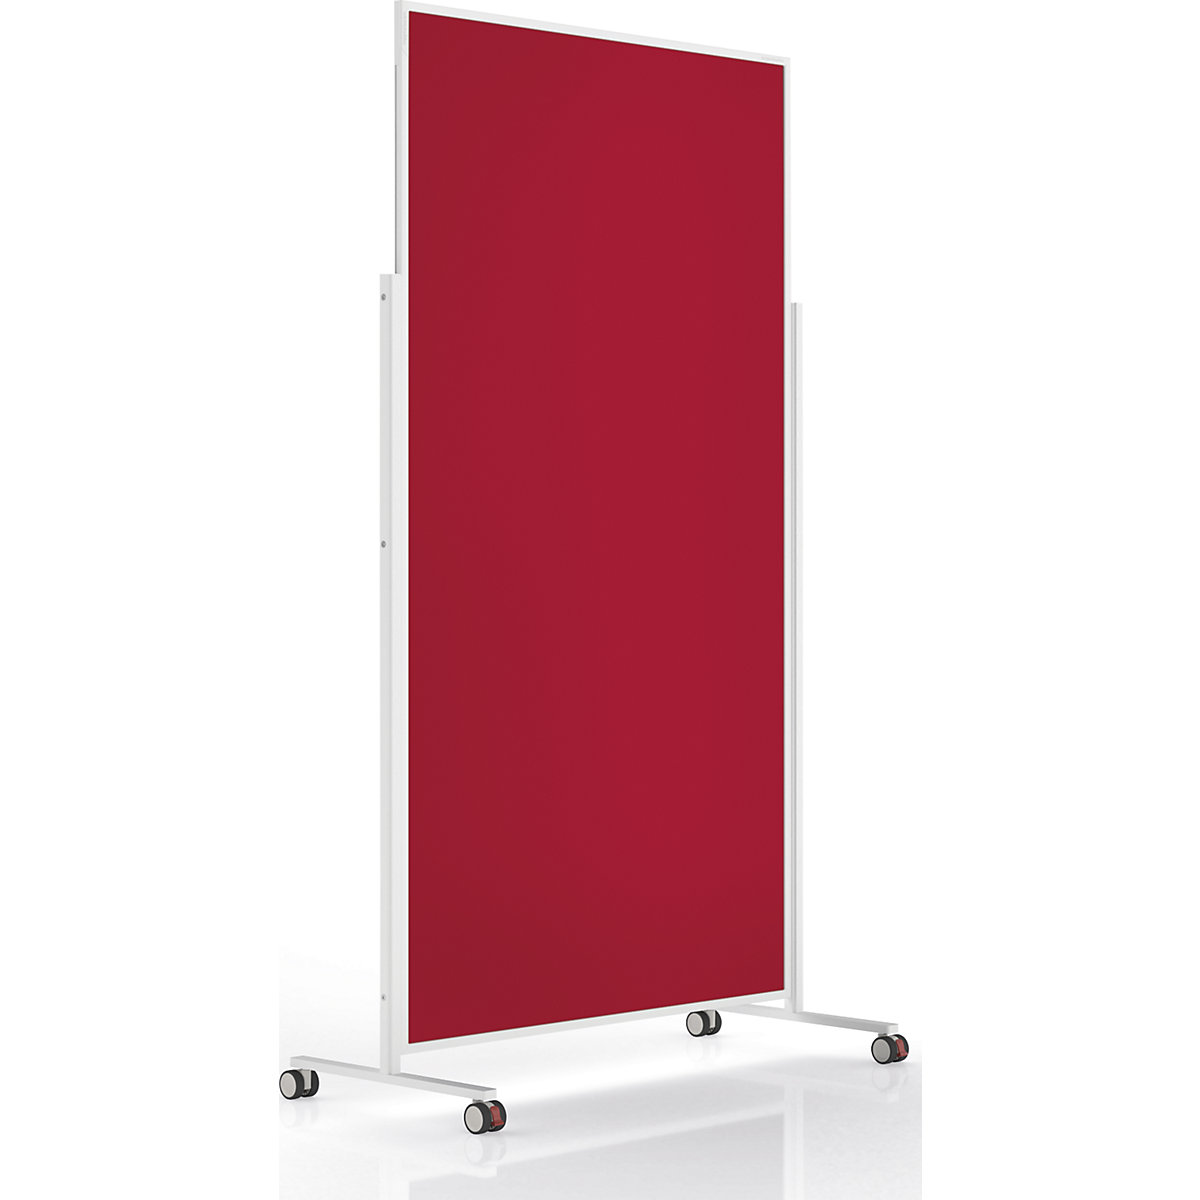 Design-Moderationstafel VarioPin magnetoplan, Tafelformat 1800 x 1000 mm, Filz, rot